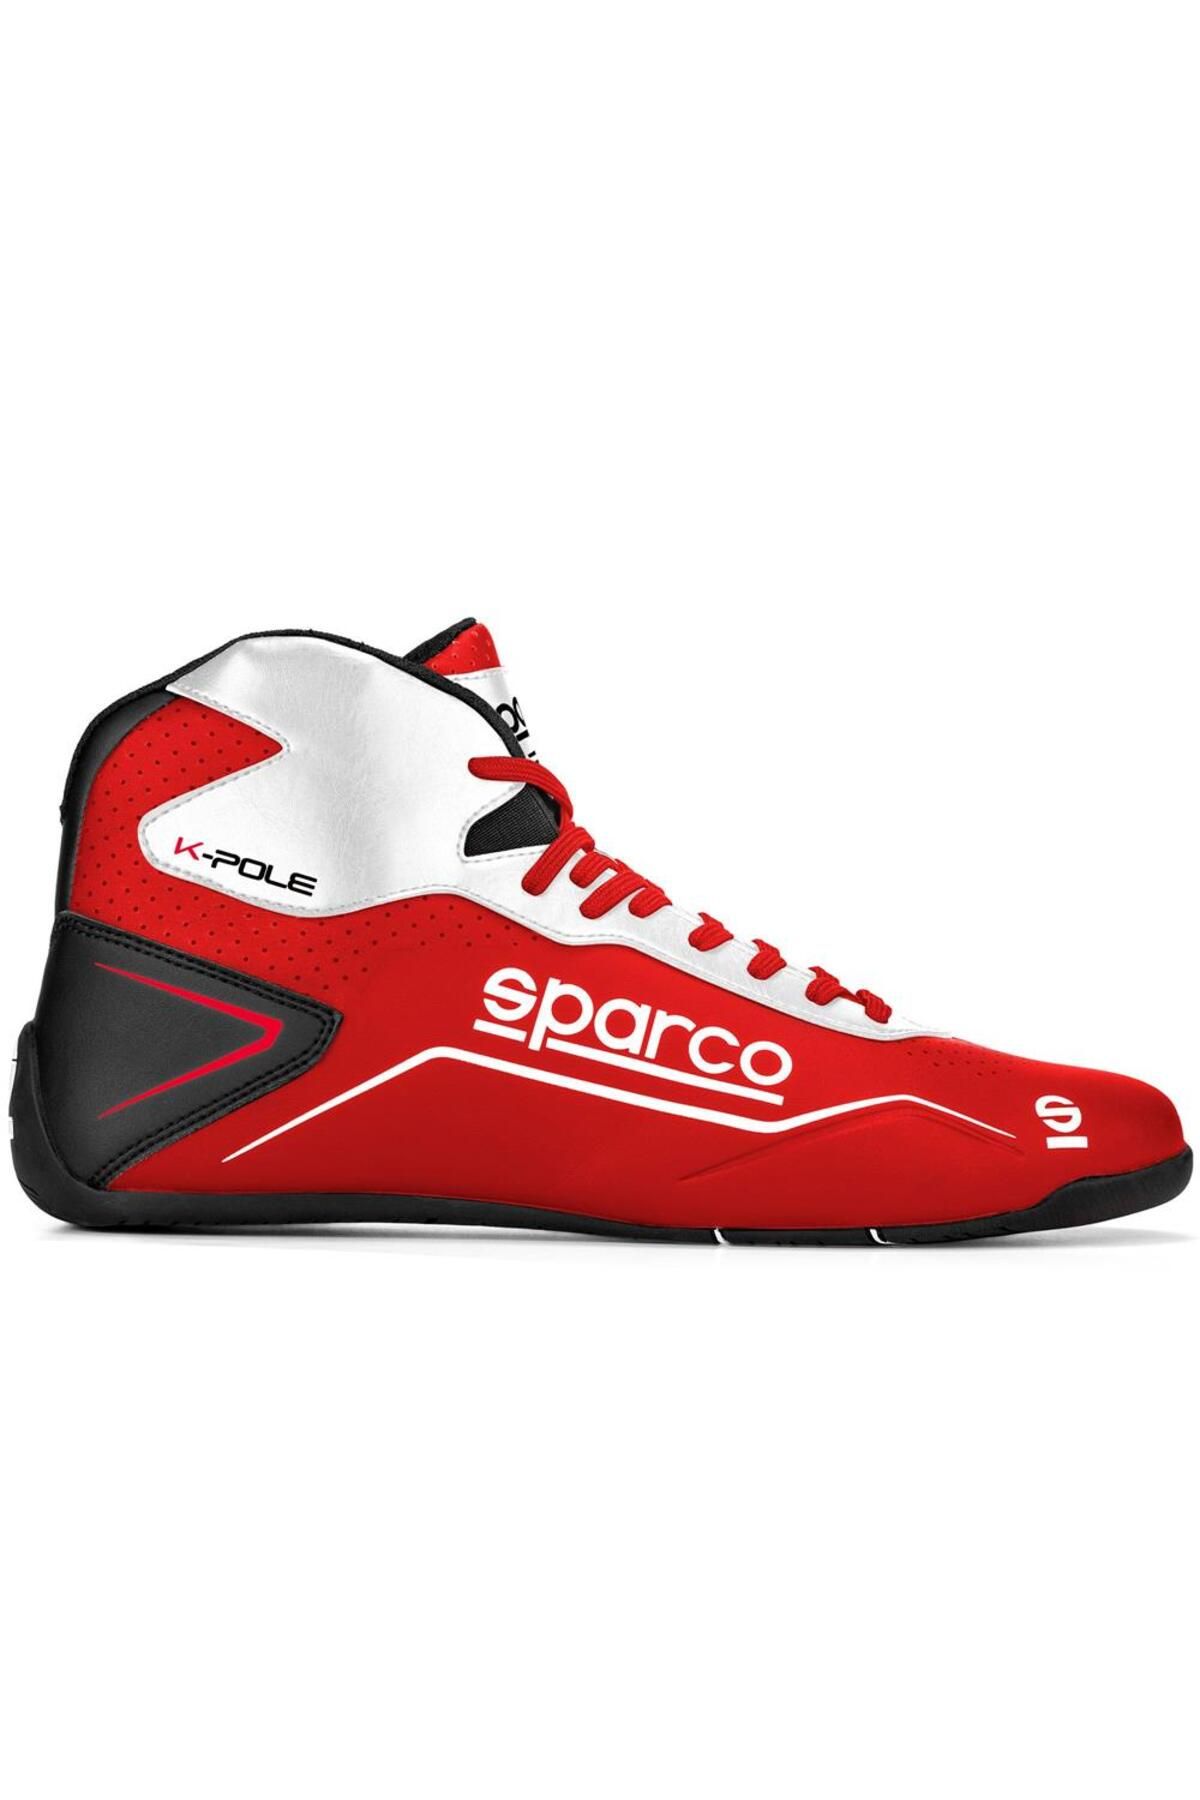 Sparco K-pole Karting Ayakkabısı Kırmızı Beyaz 38 Numara